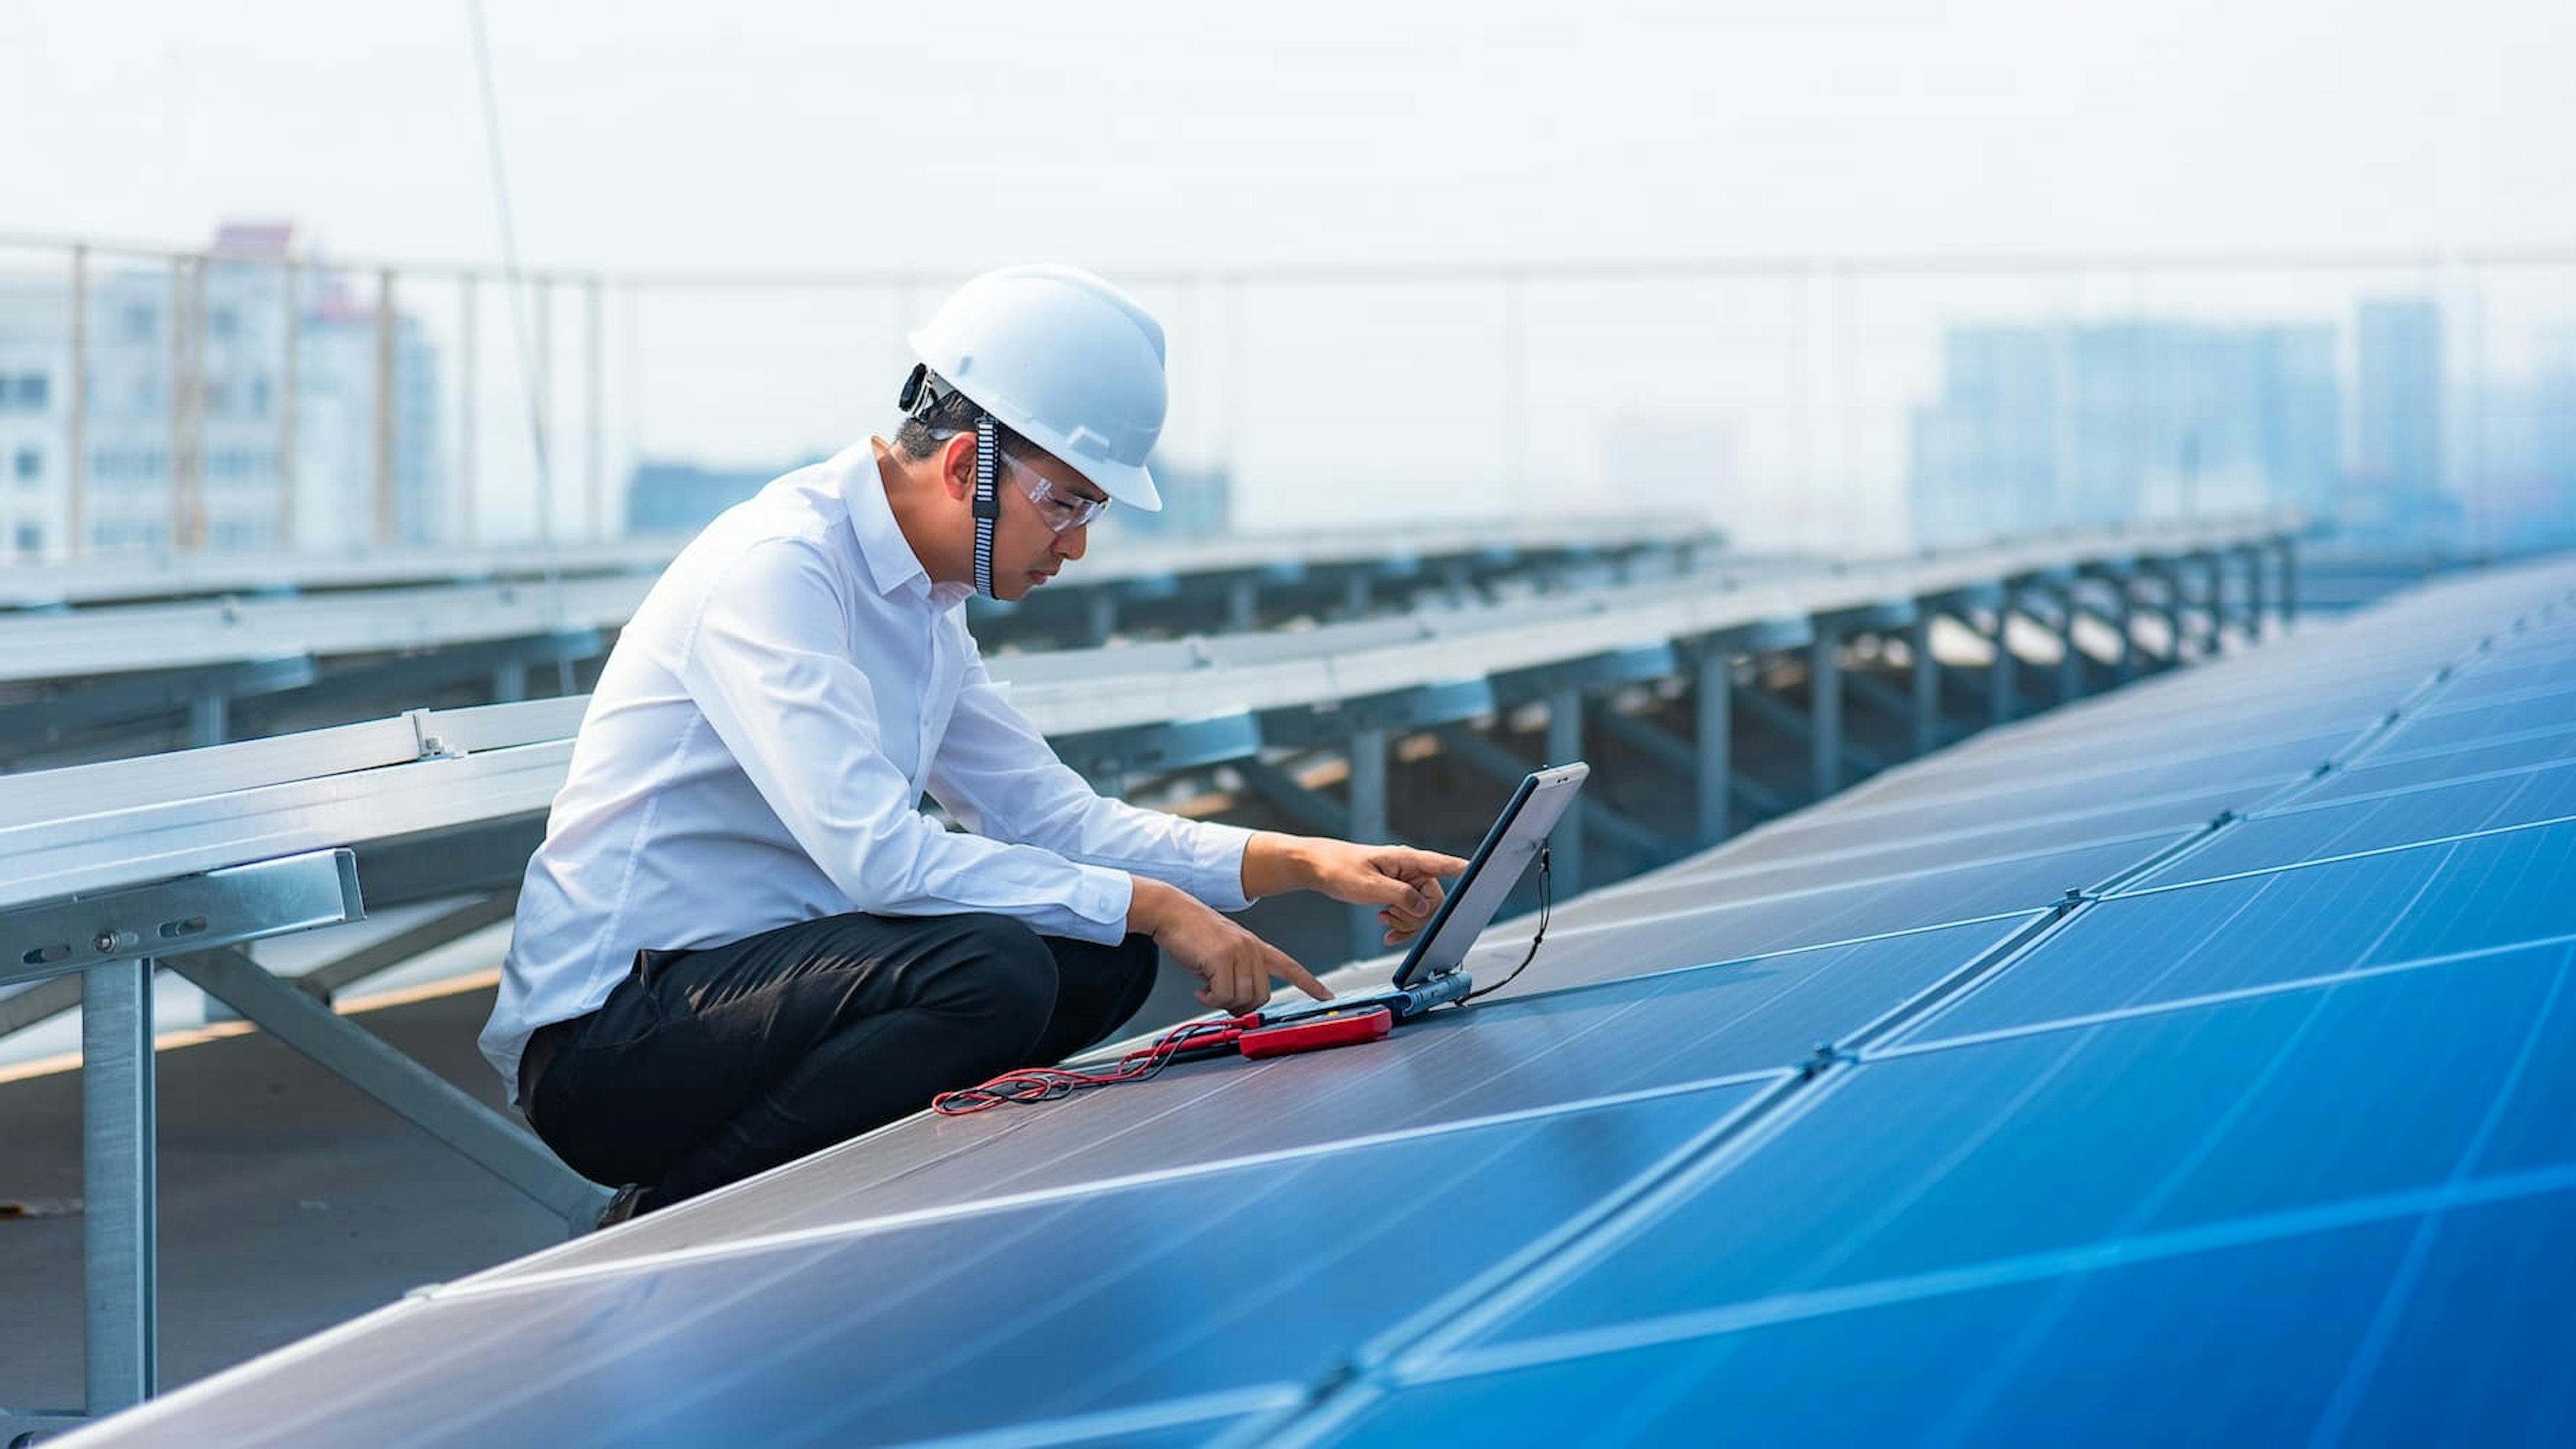 Employee working on solar panel